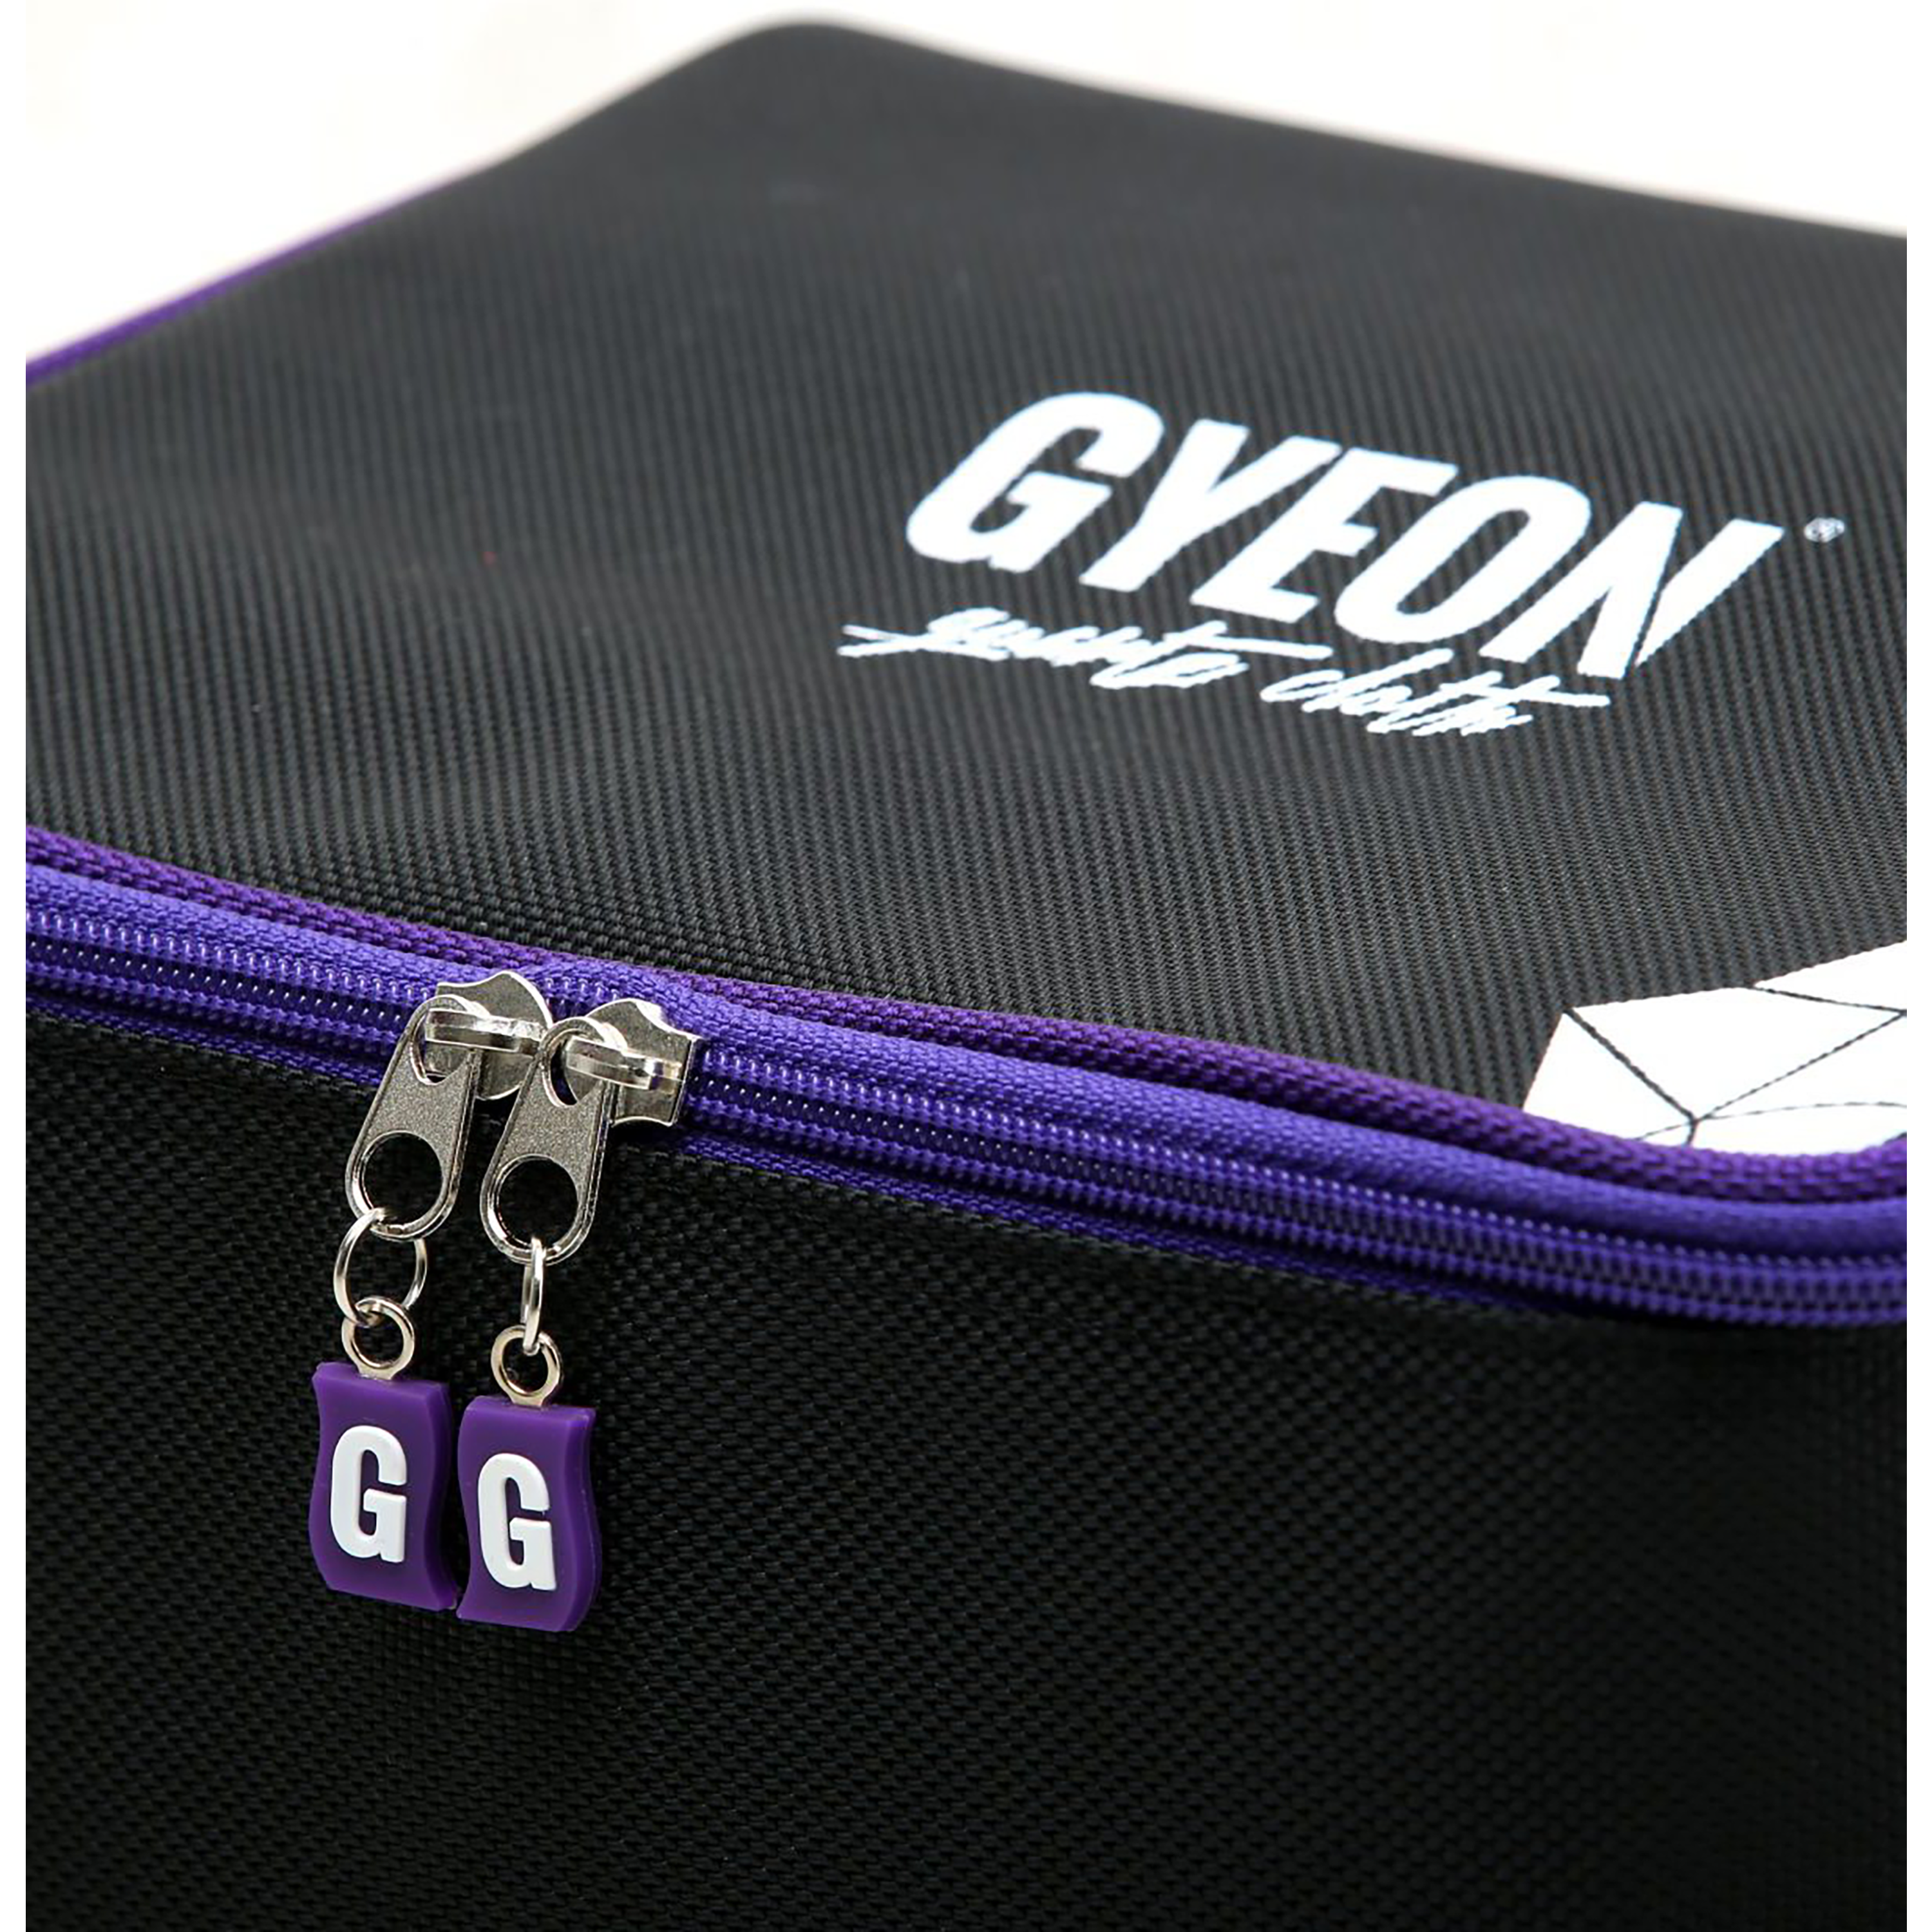 Gyeon USA Q²M Detailing Bag